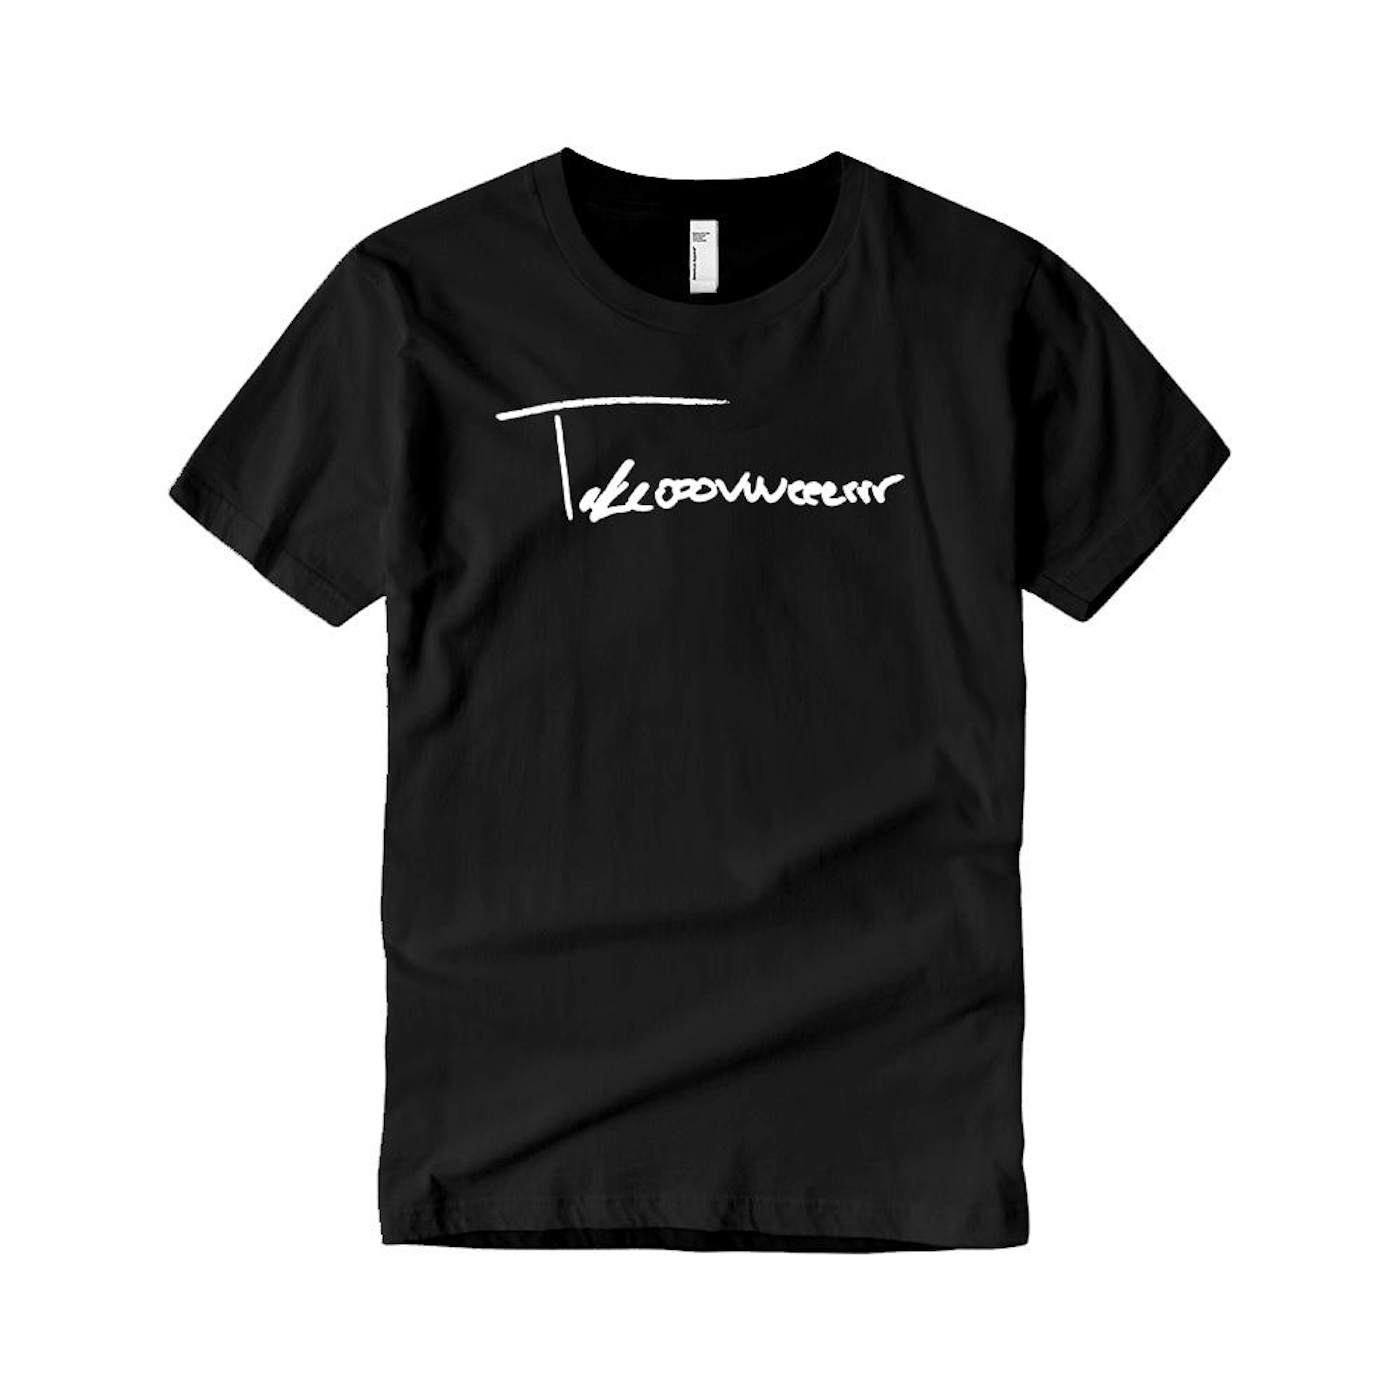 Taylor J Takeover Signature T-Shirt (Black/White)